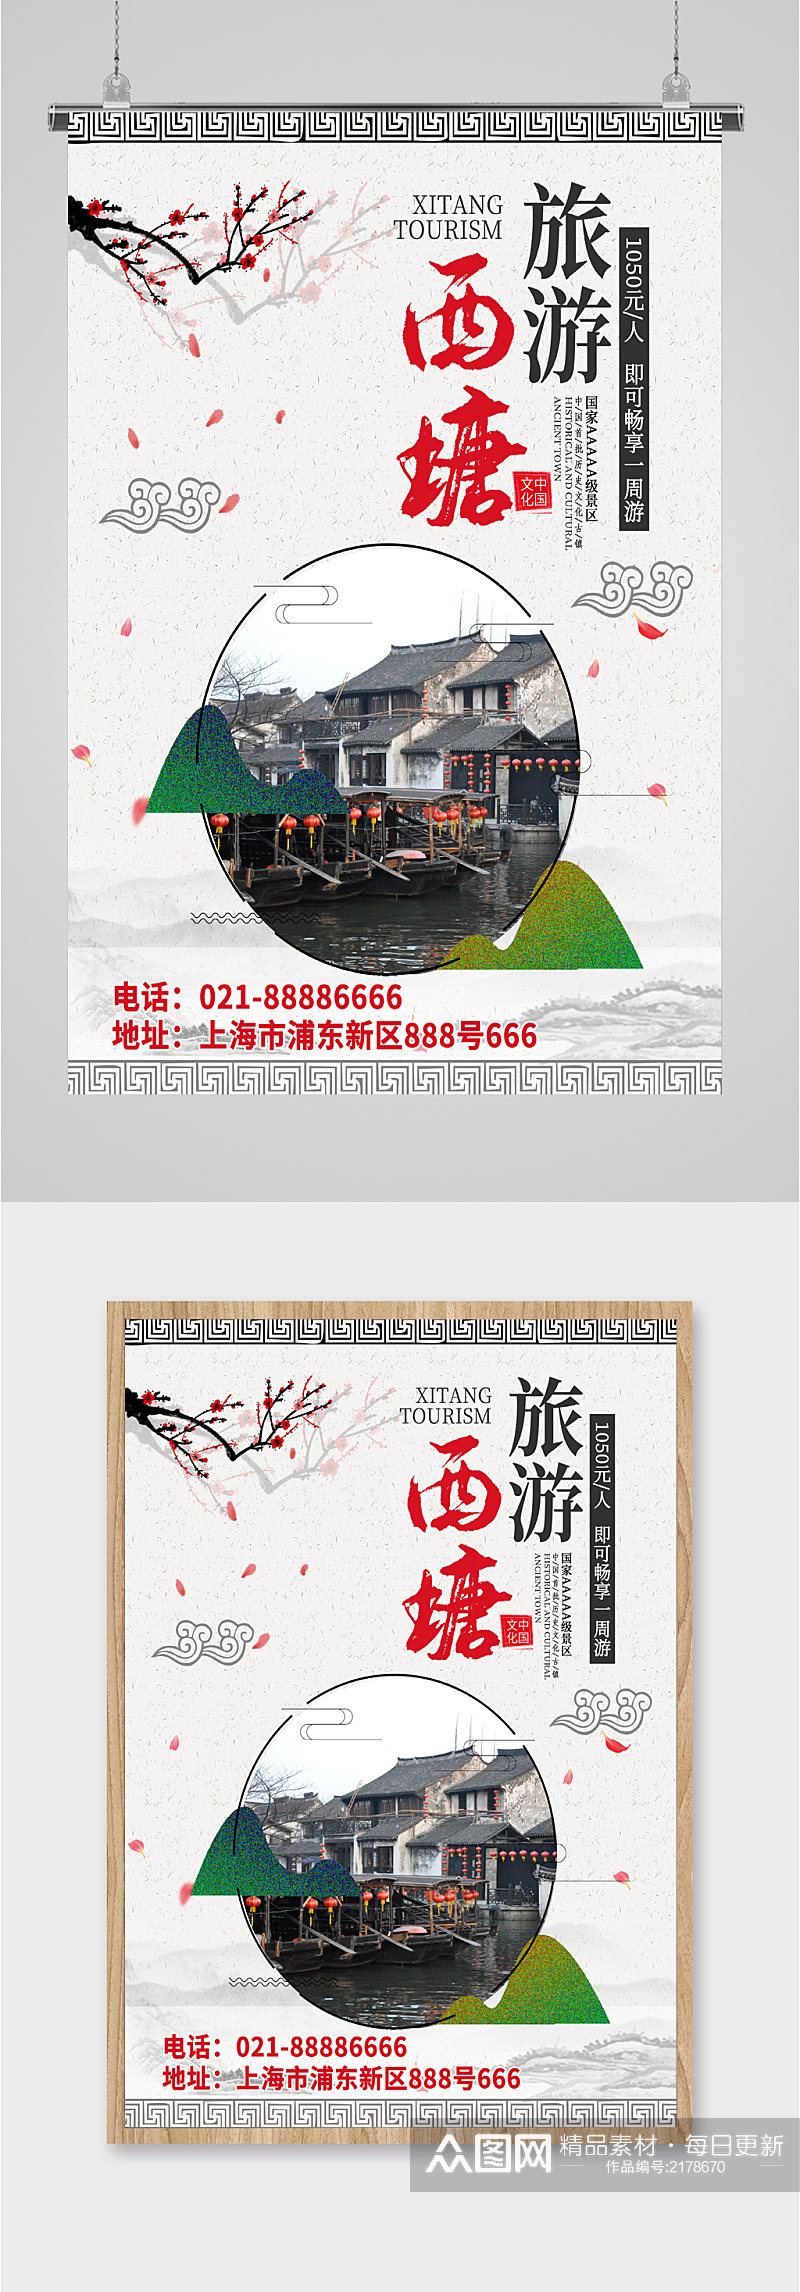 西塘古镇旅游海报素材